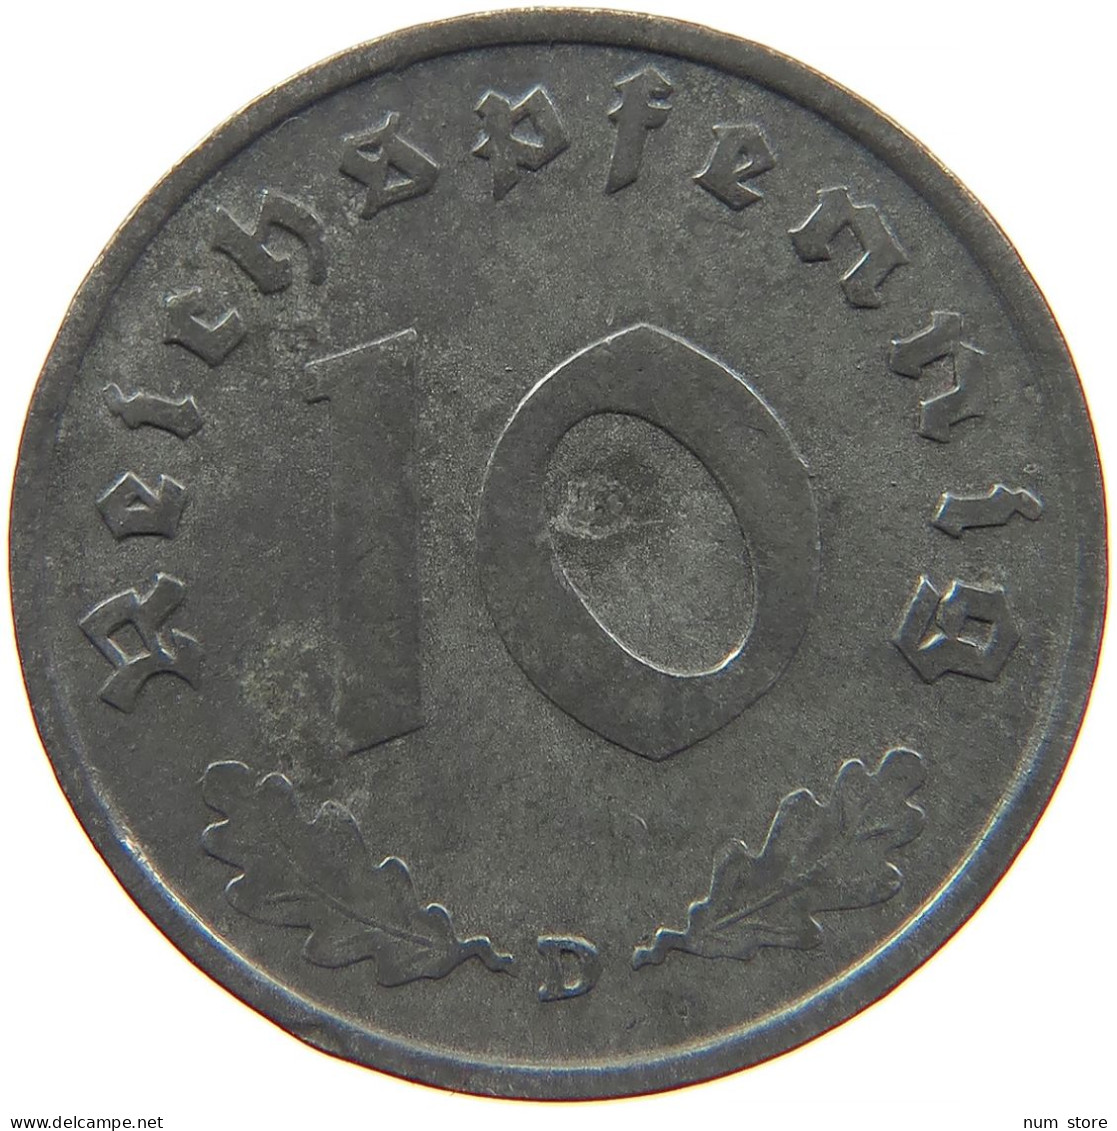 GERMANY 10 REICHSPFENNIG 1940 D #s095 0091 - 10 Reichspfennig